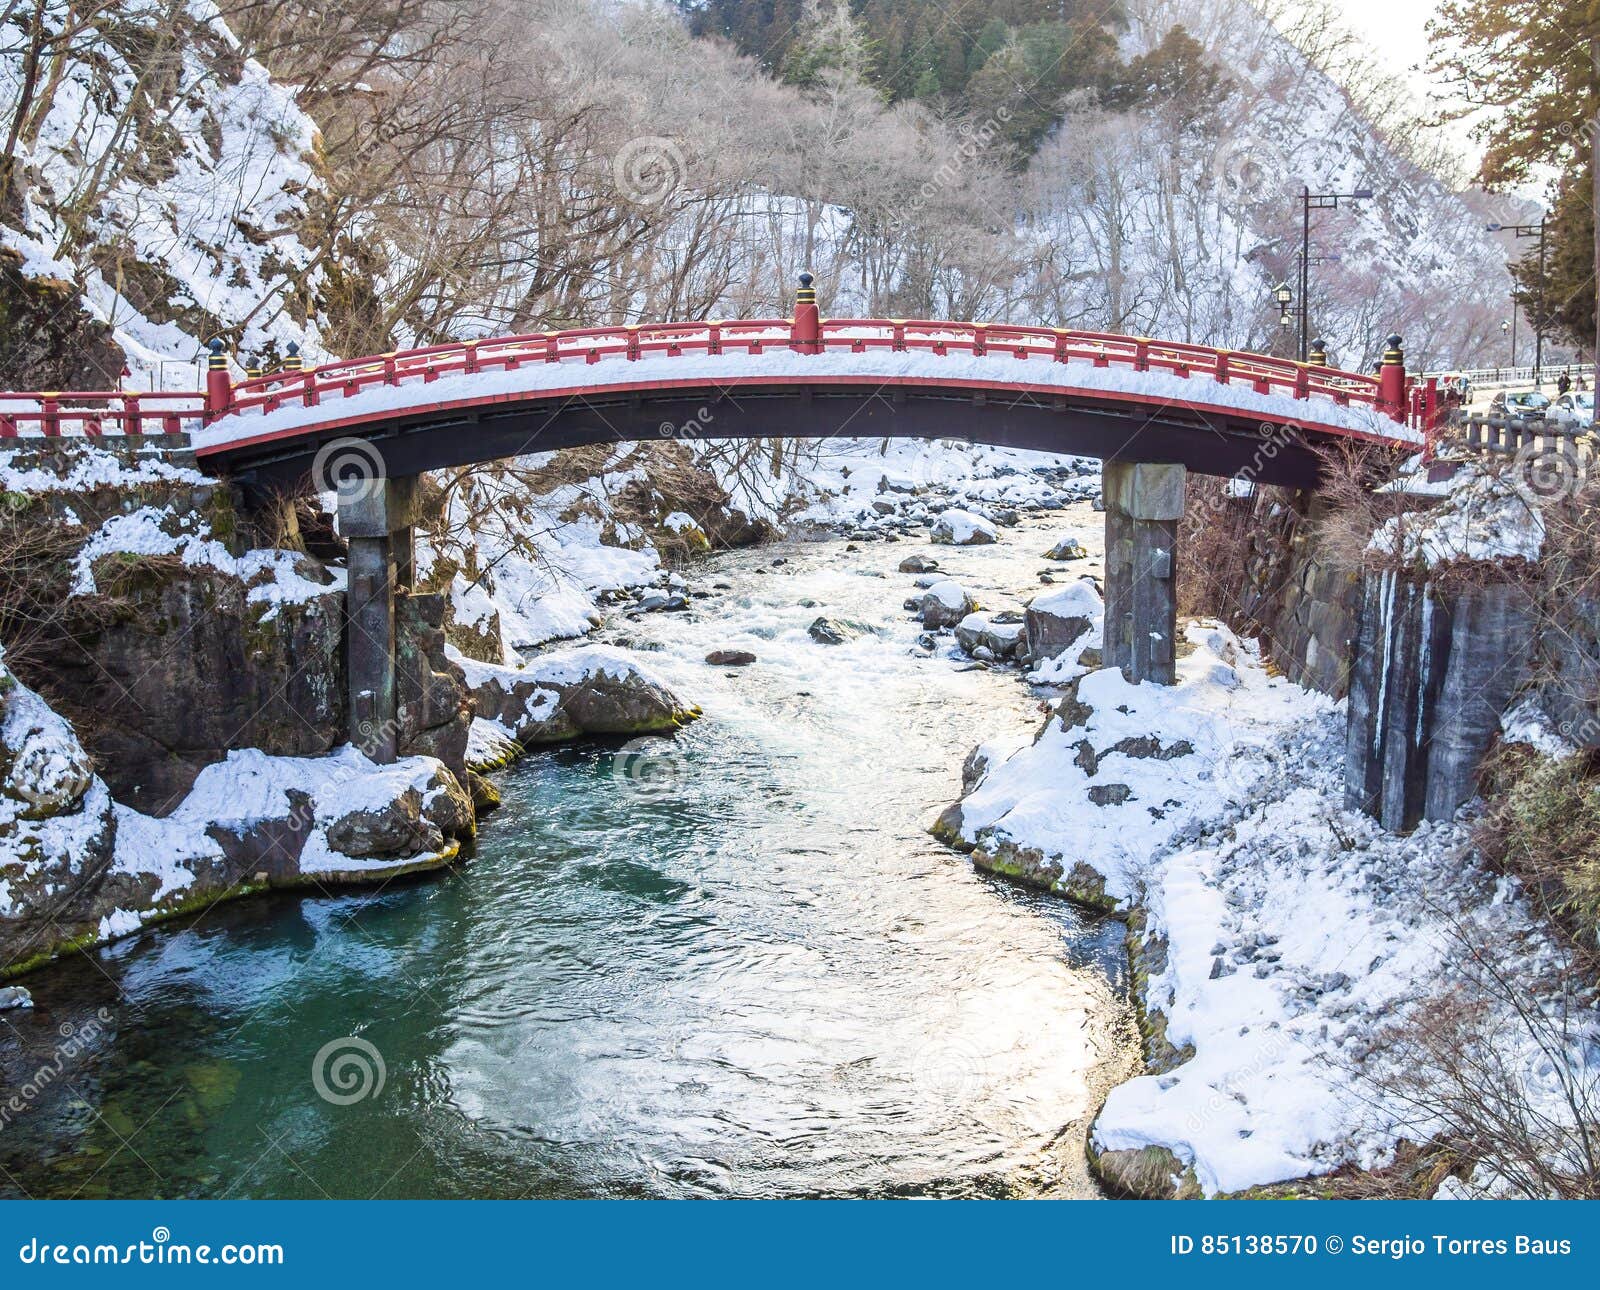 crecimiento puerta excusa Snow on the Nikko bridge stock photo. Image of nikko - 85138570